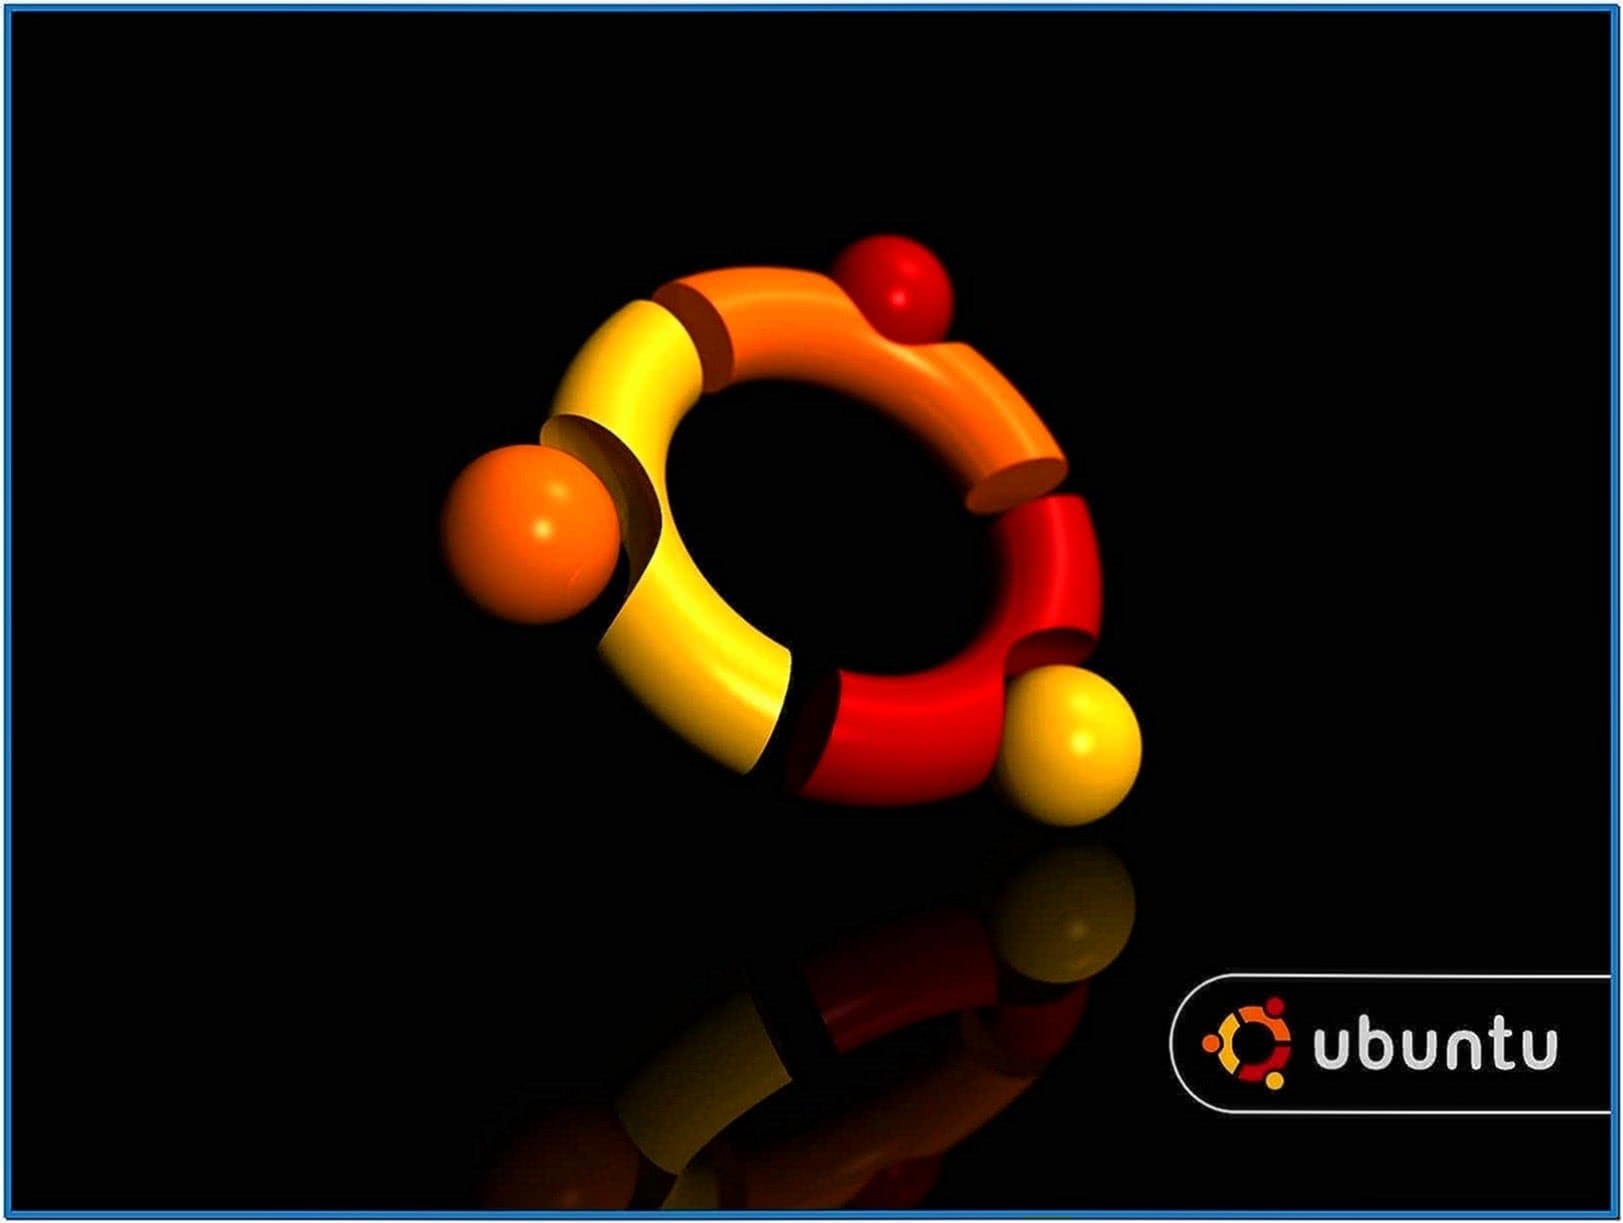 Screensaver Ubuntu 11